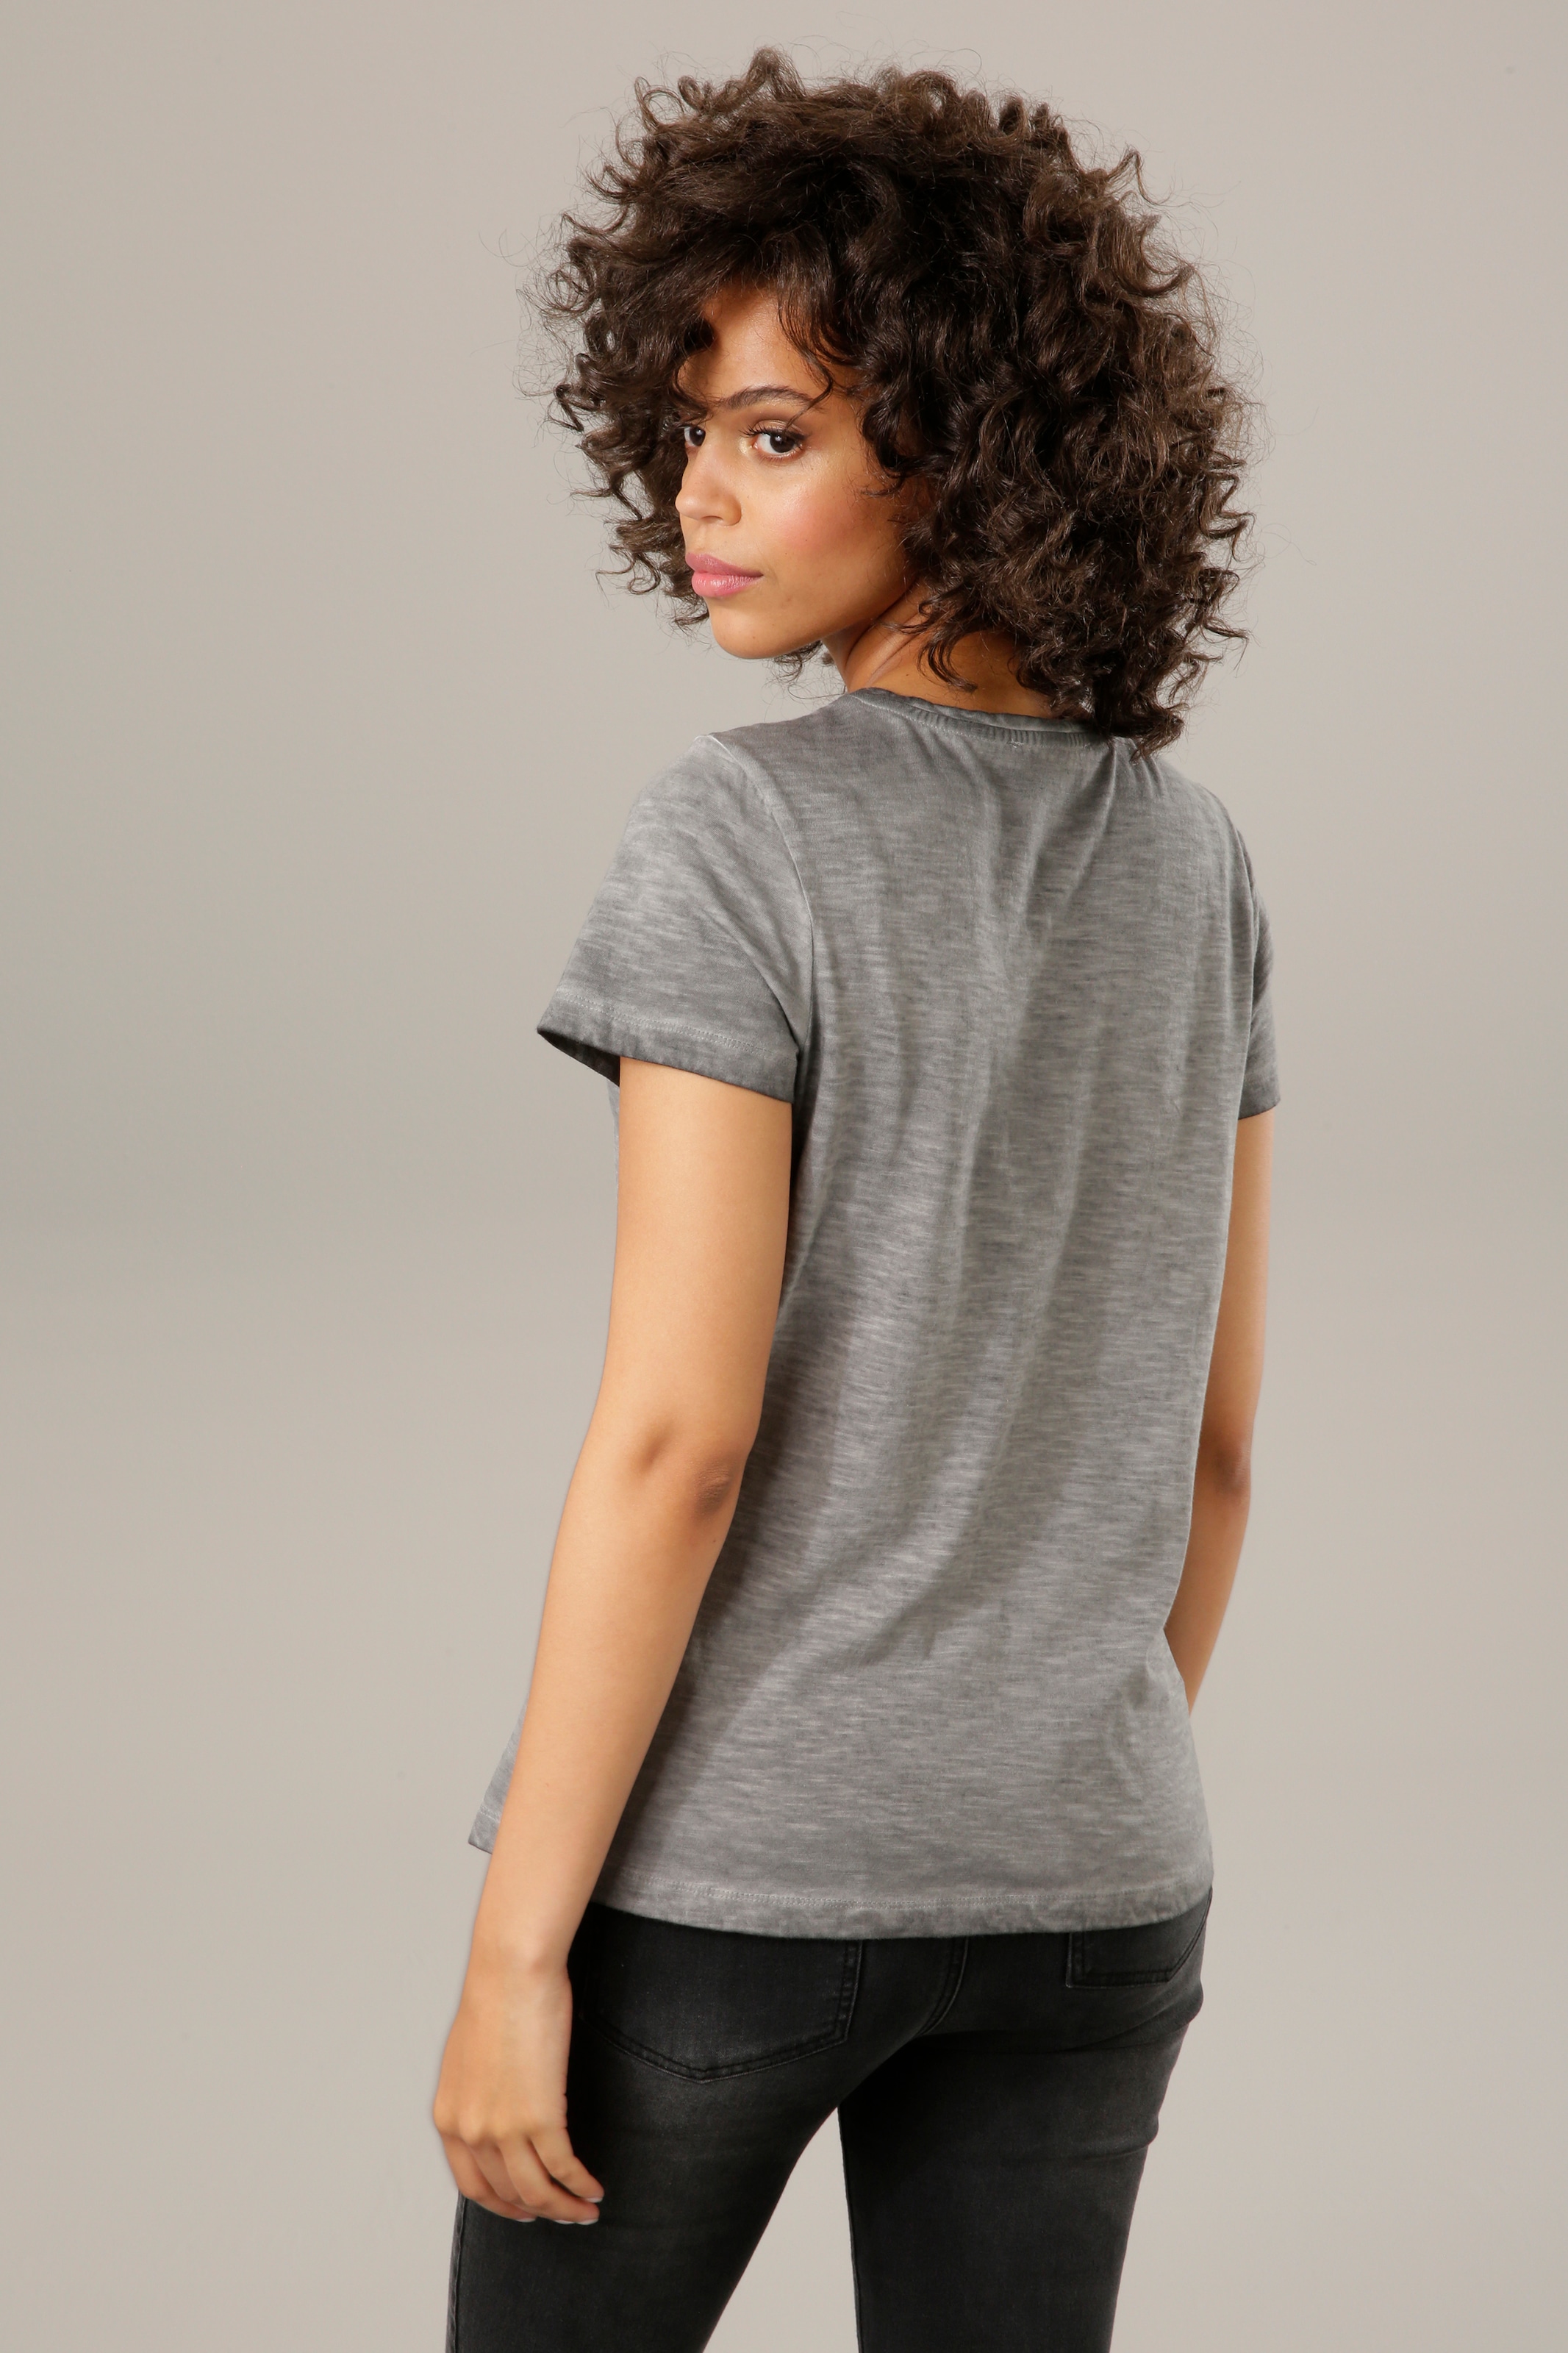 CASUAL Glitzersteinchen im OTTO Online Aniston mit verzierter T-Shirt, Shop Frontdruck